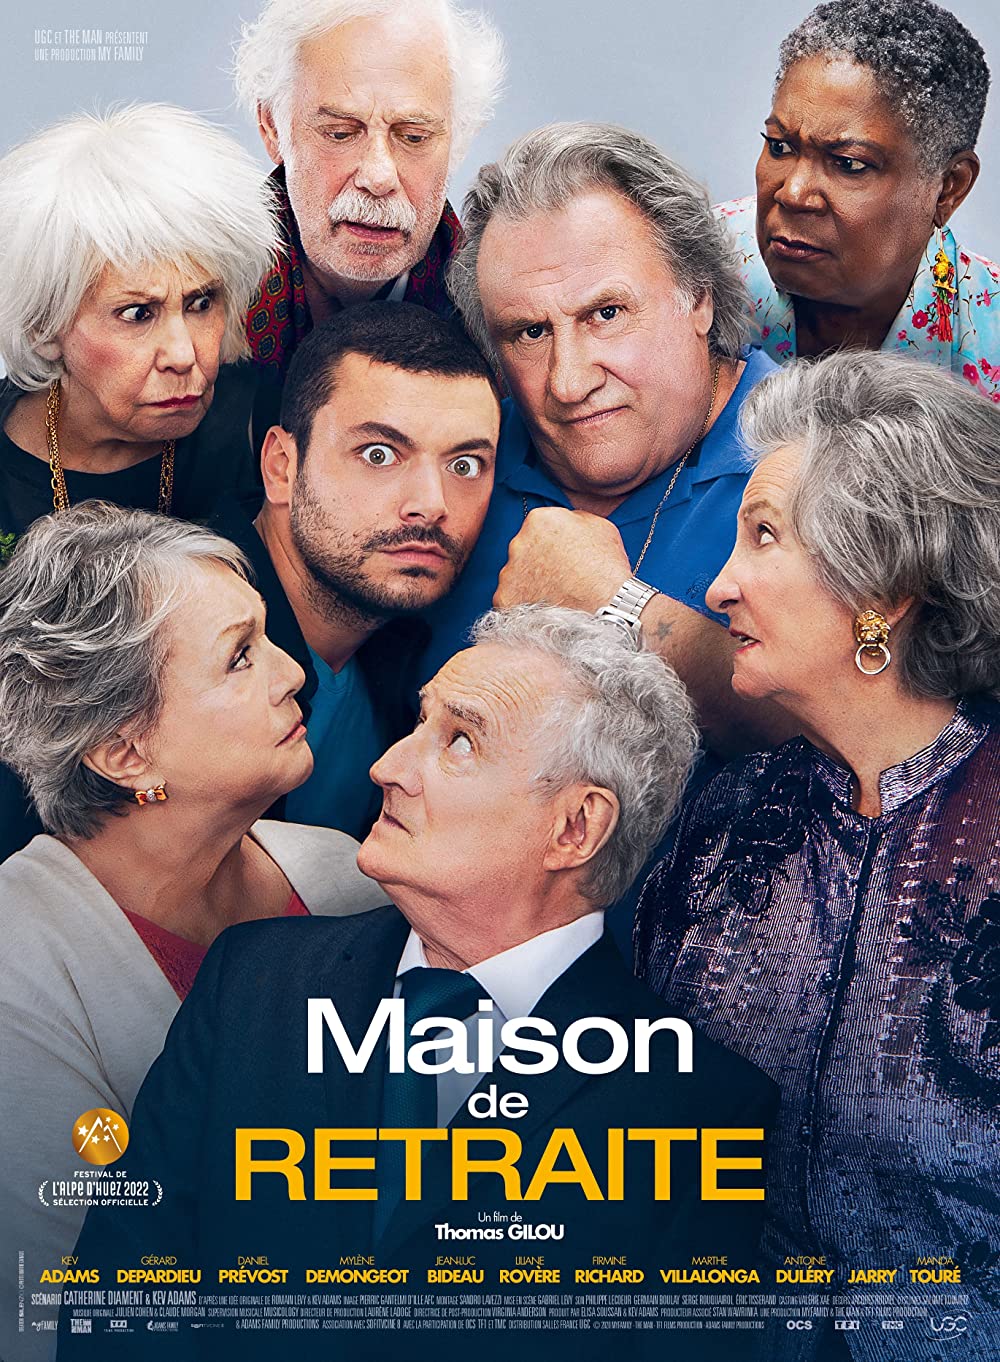 Filmbeschreibung zu Maison de retraite (OV)